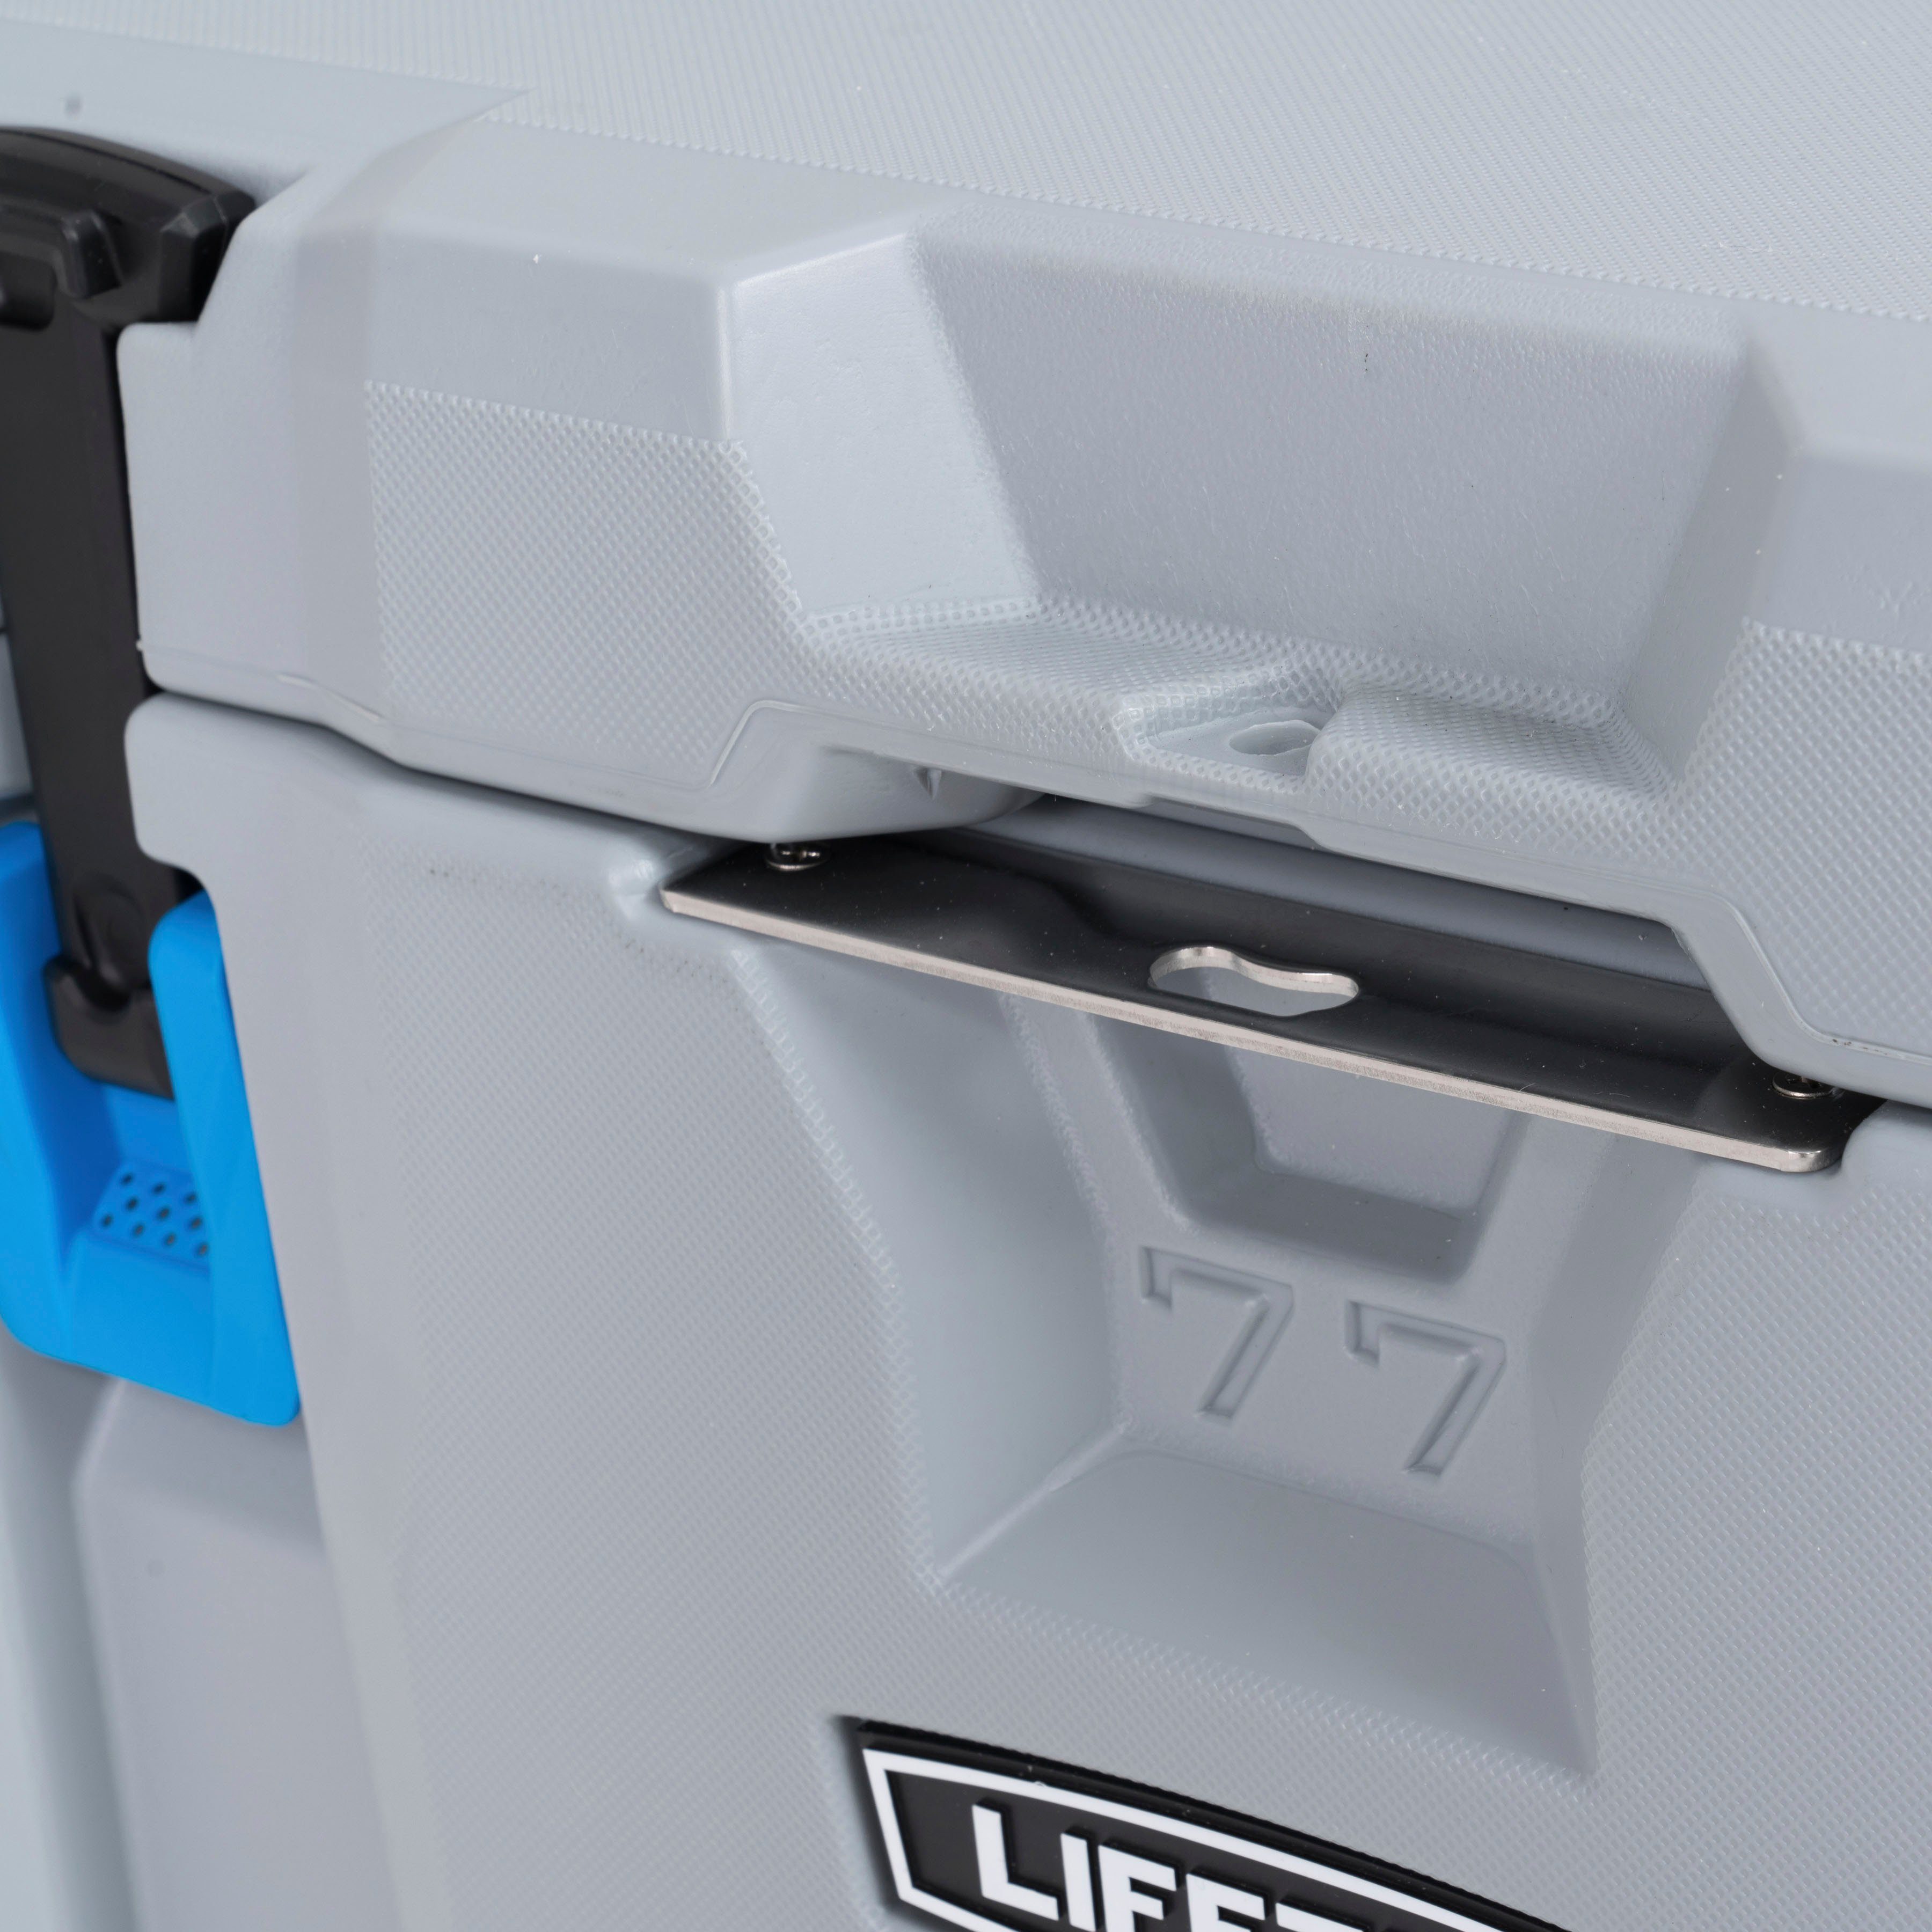 Urethan l, Premium, 73 Kühlbox Lifetime zweischichtigem aus